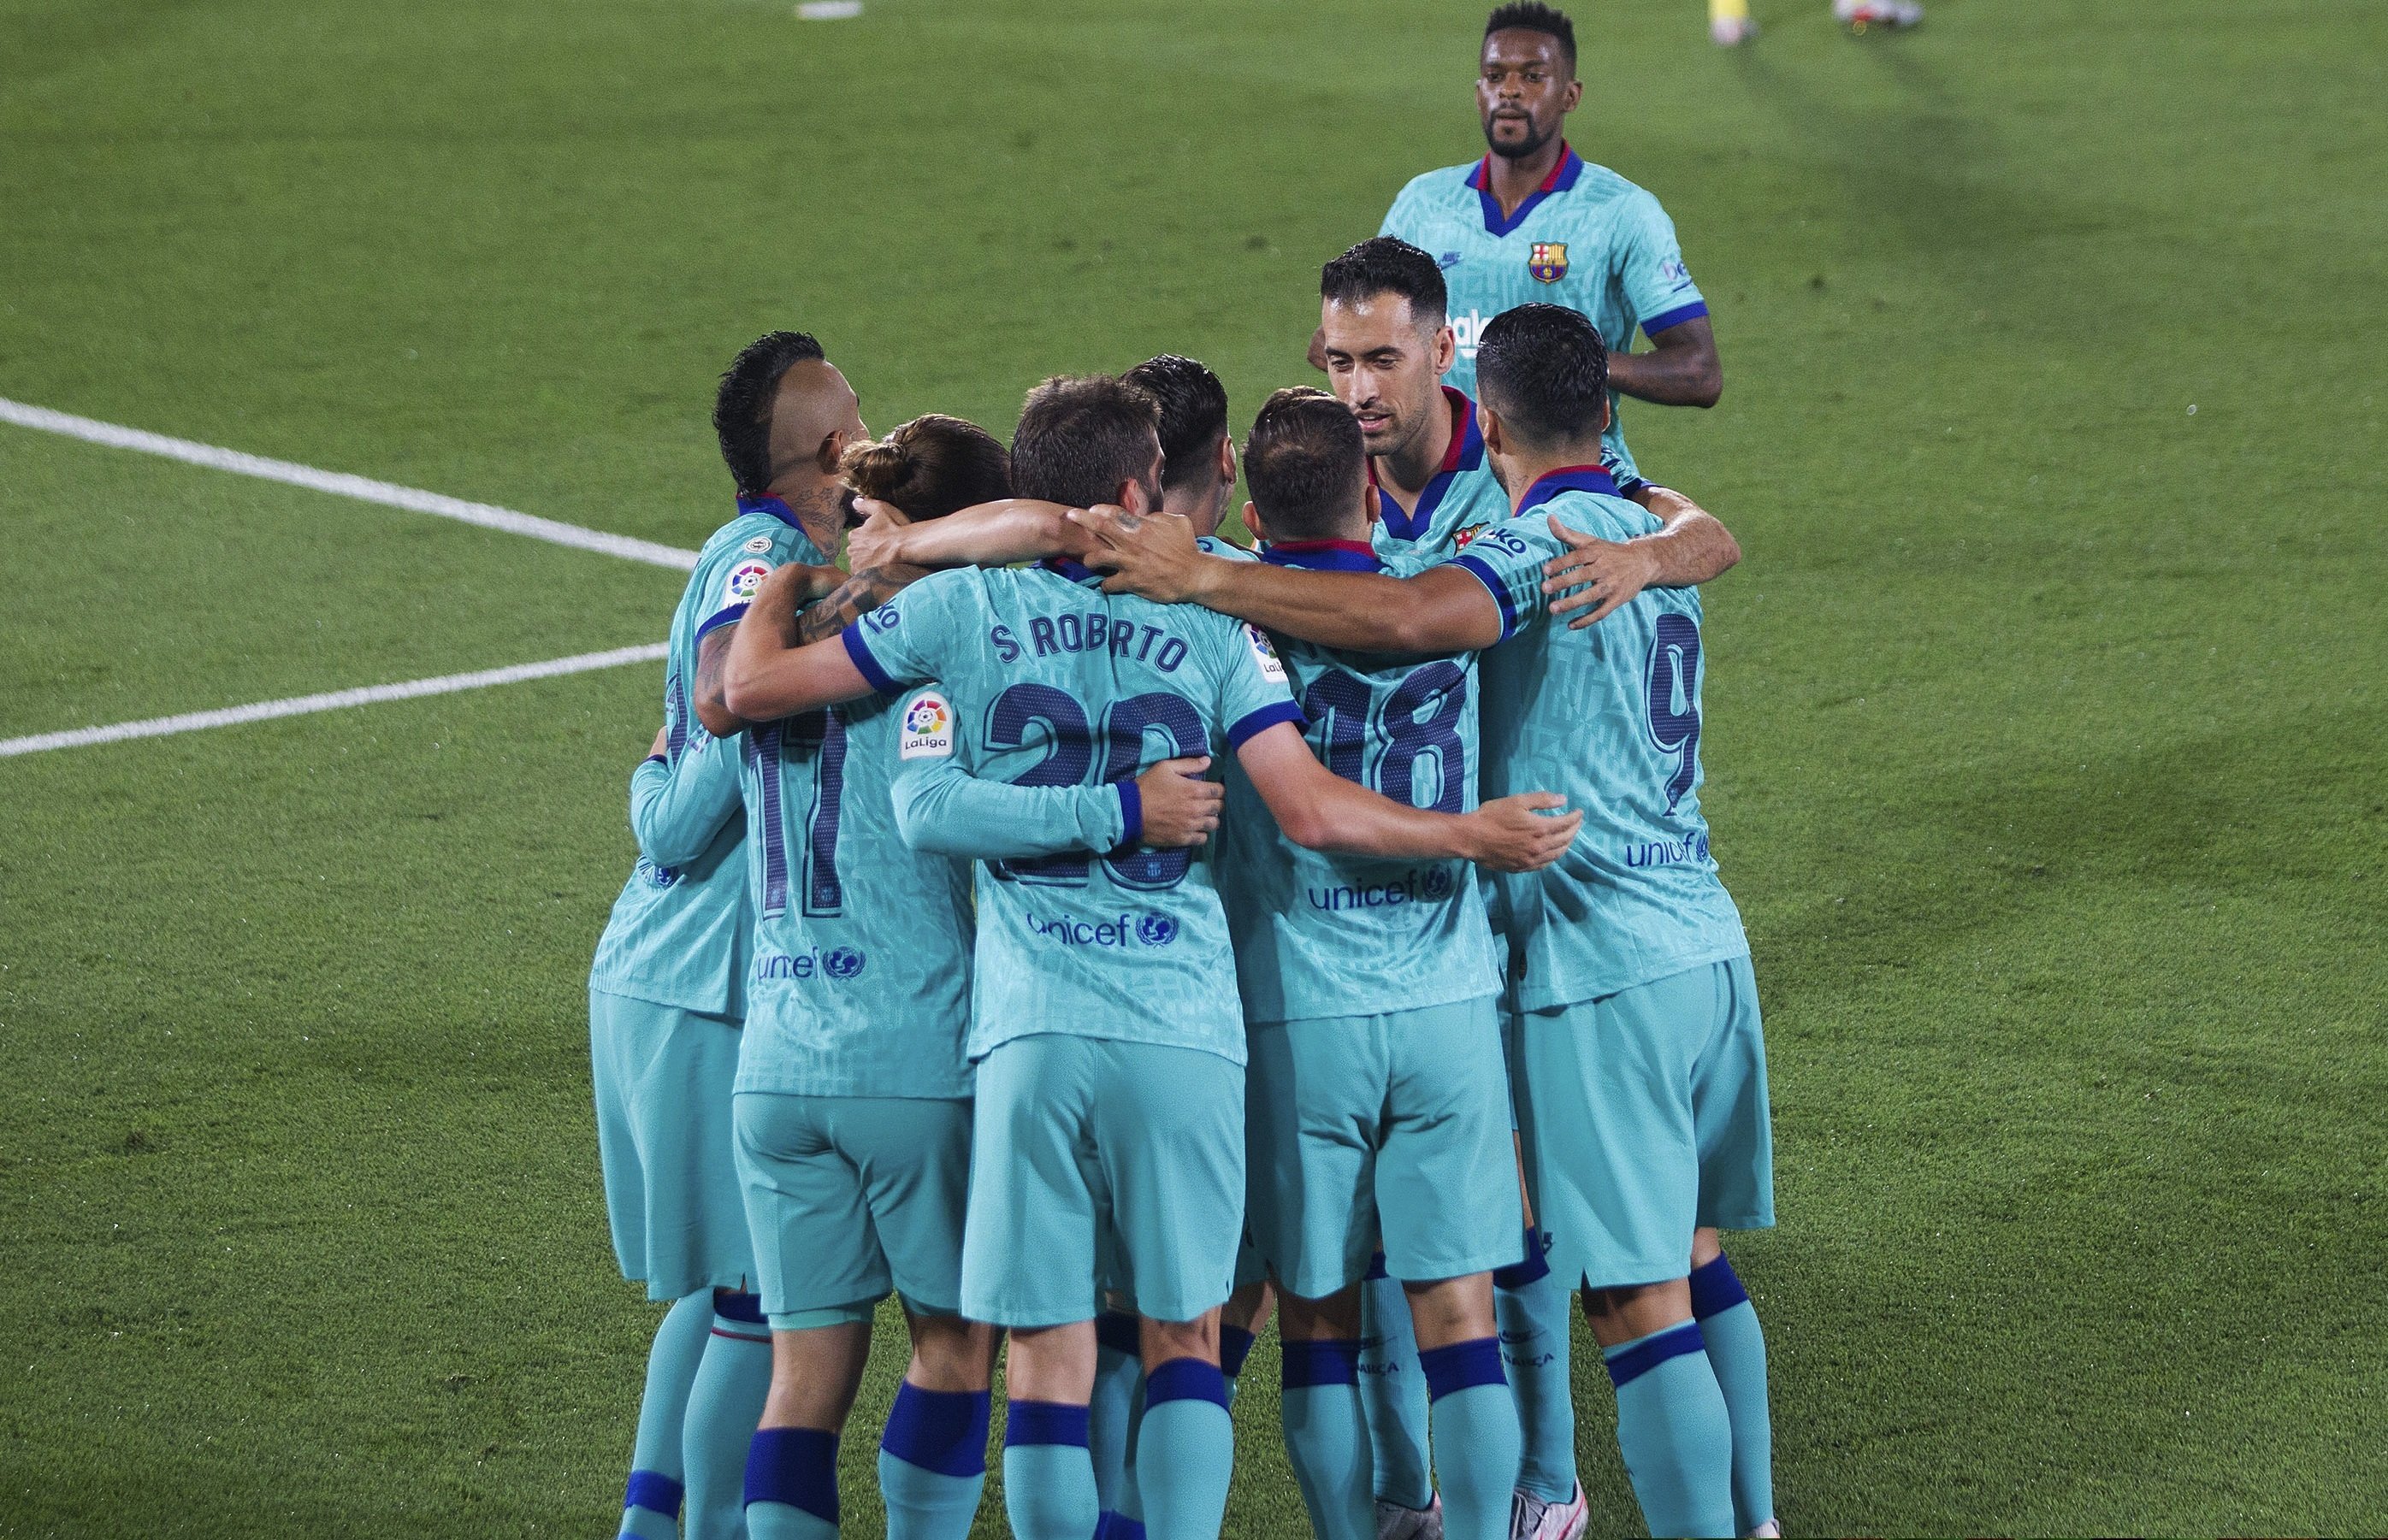 El Barça golea en Villarreal y mantiene una mínima esperanza en la Liga (1-4)